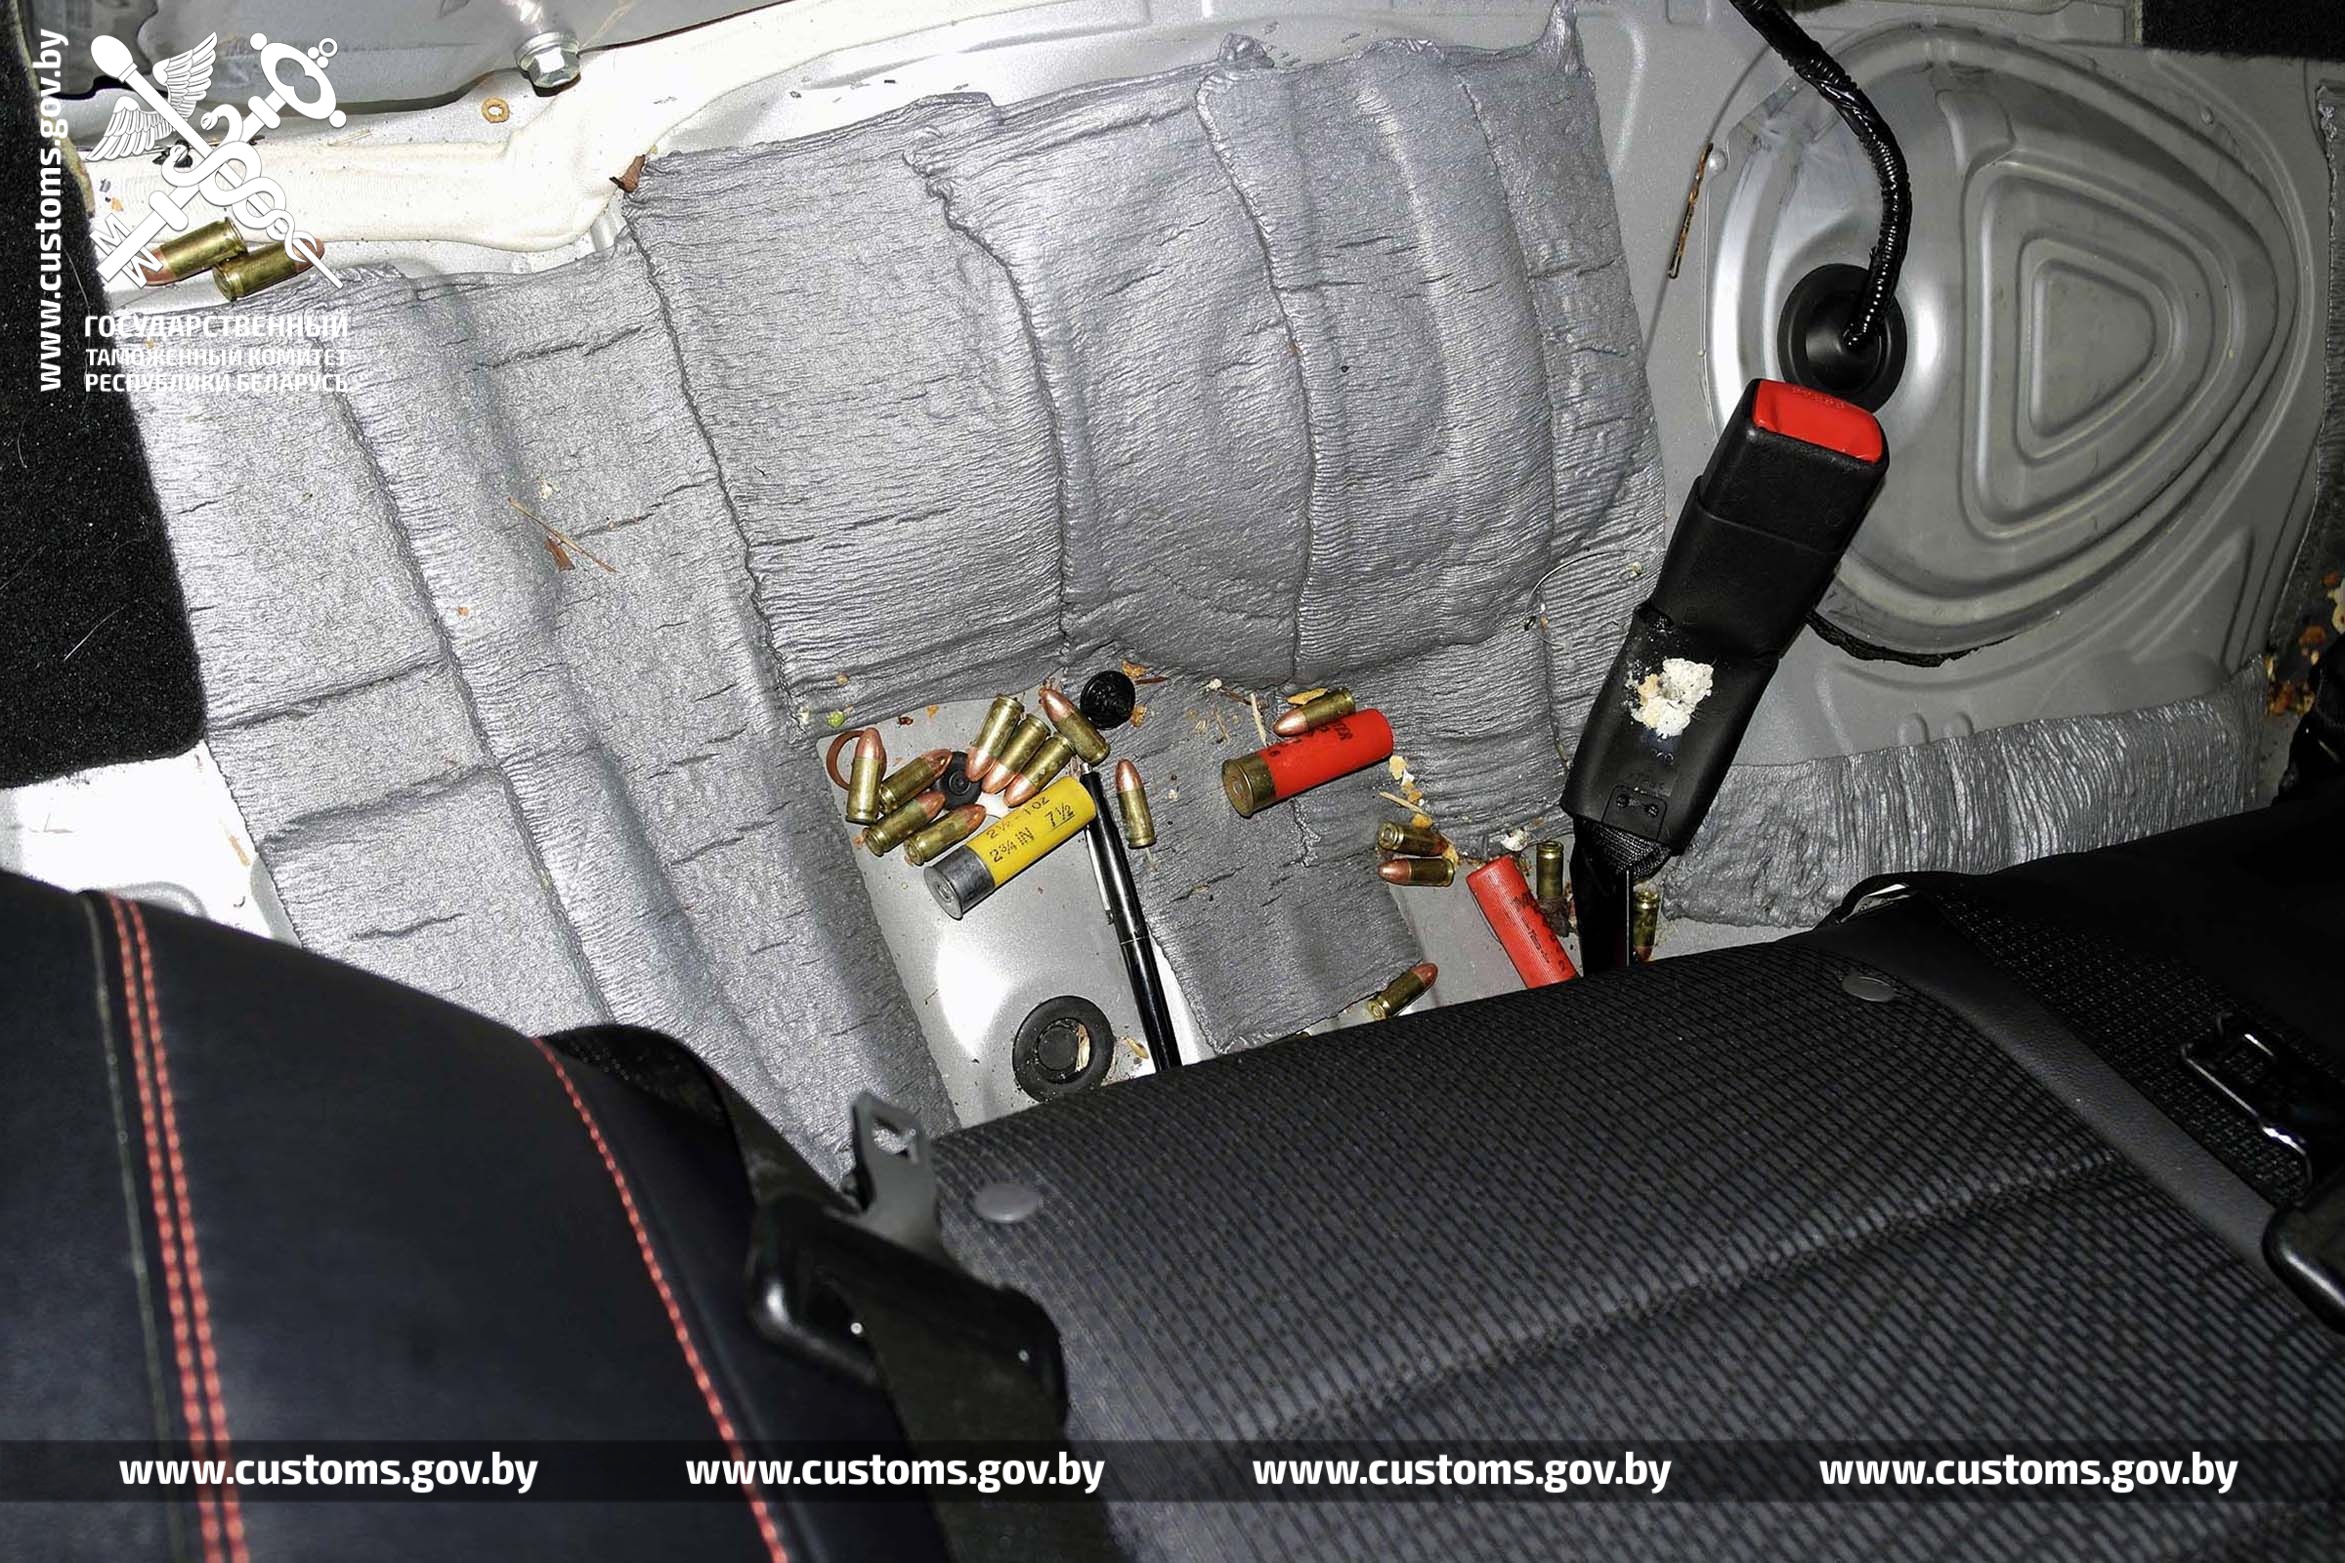 28 боеприпасов к оружию, пригодных для стрельбы, обнаружили витебские таможенники при досмотре ввозимых из Литвы легковых автомобилей